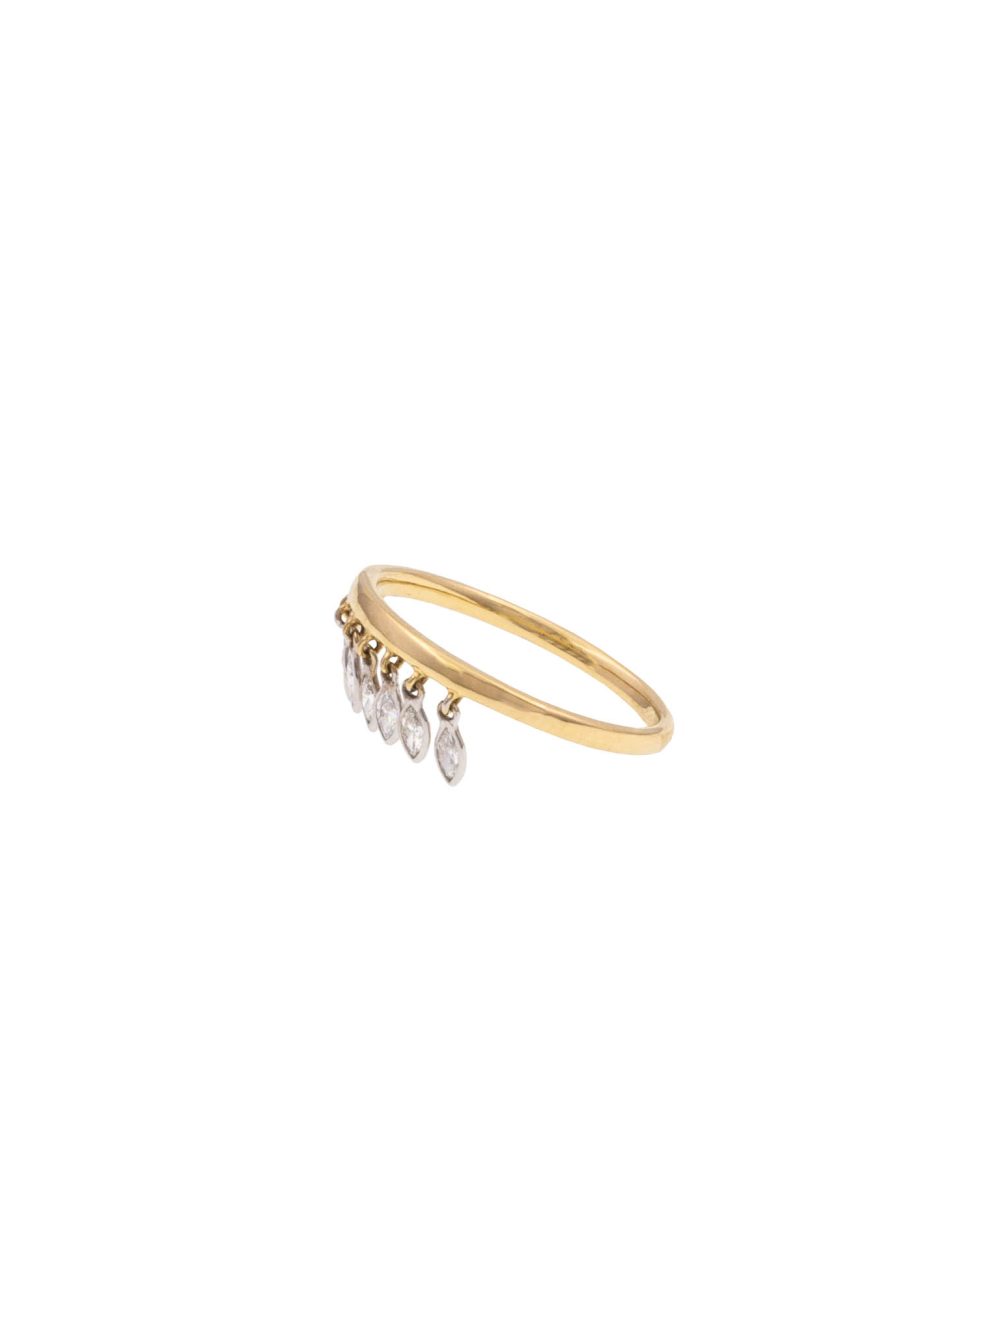 ring-pendant-diamonds-gigi-luj-paris-jewelery-3